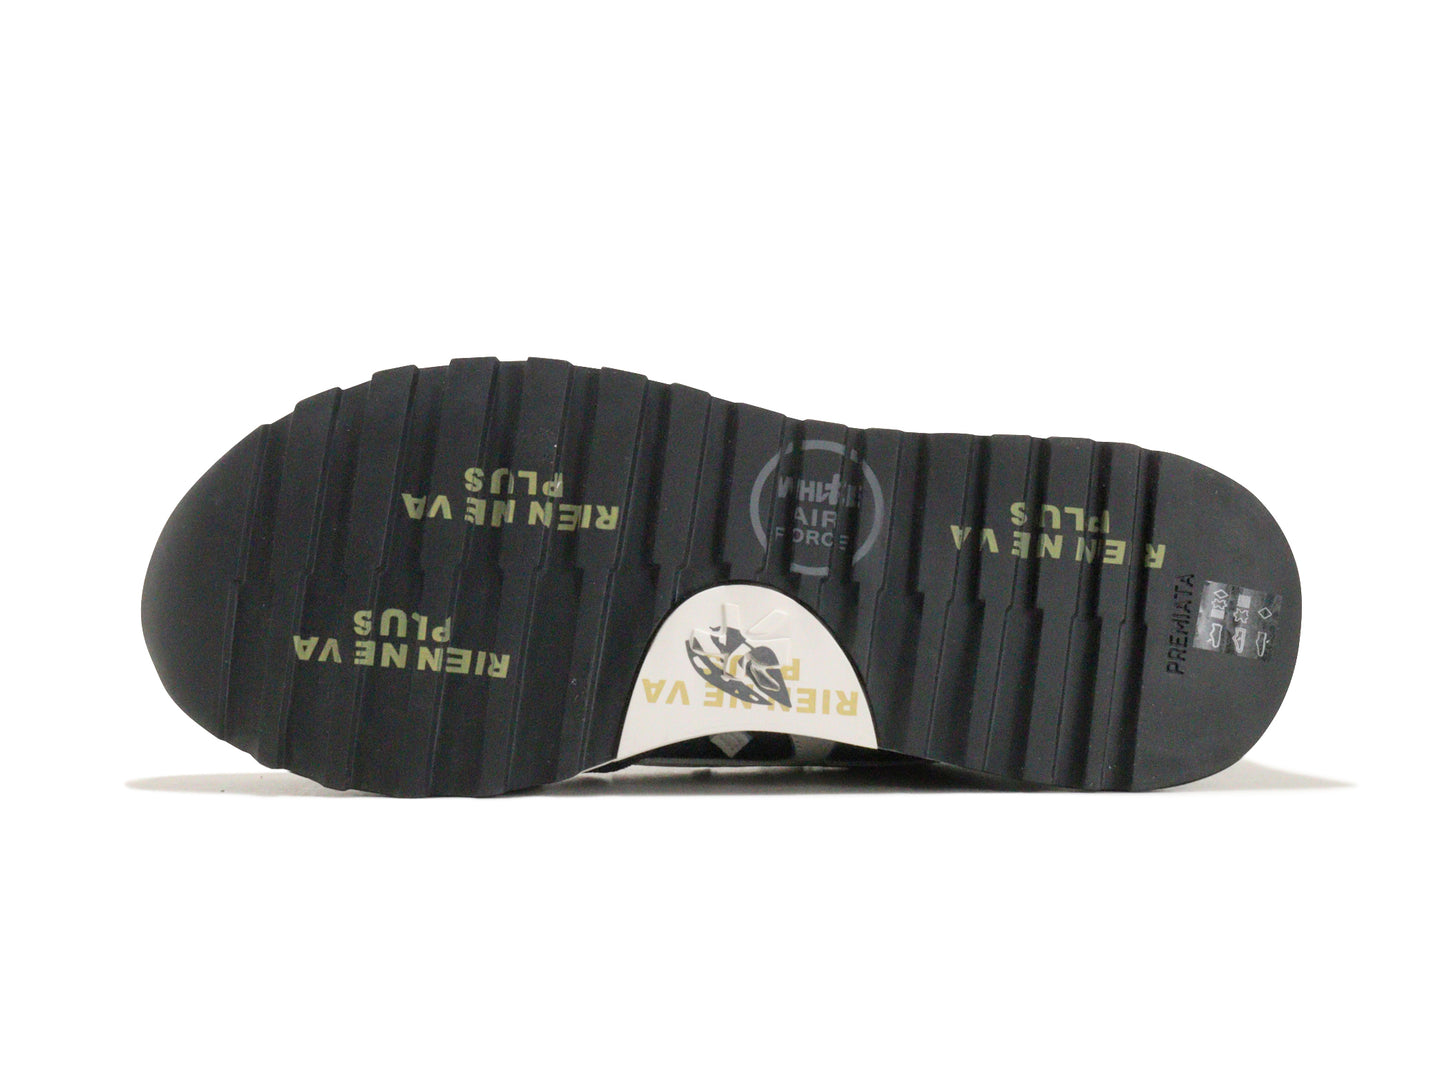 PREMIATAのスニーカー「1280e」の靴底の商品画像